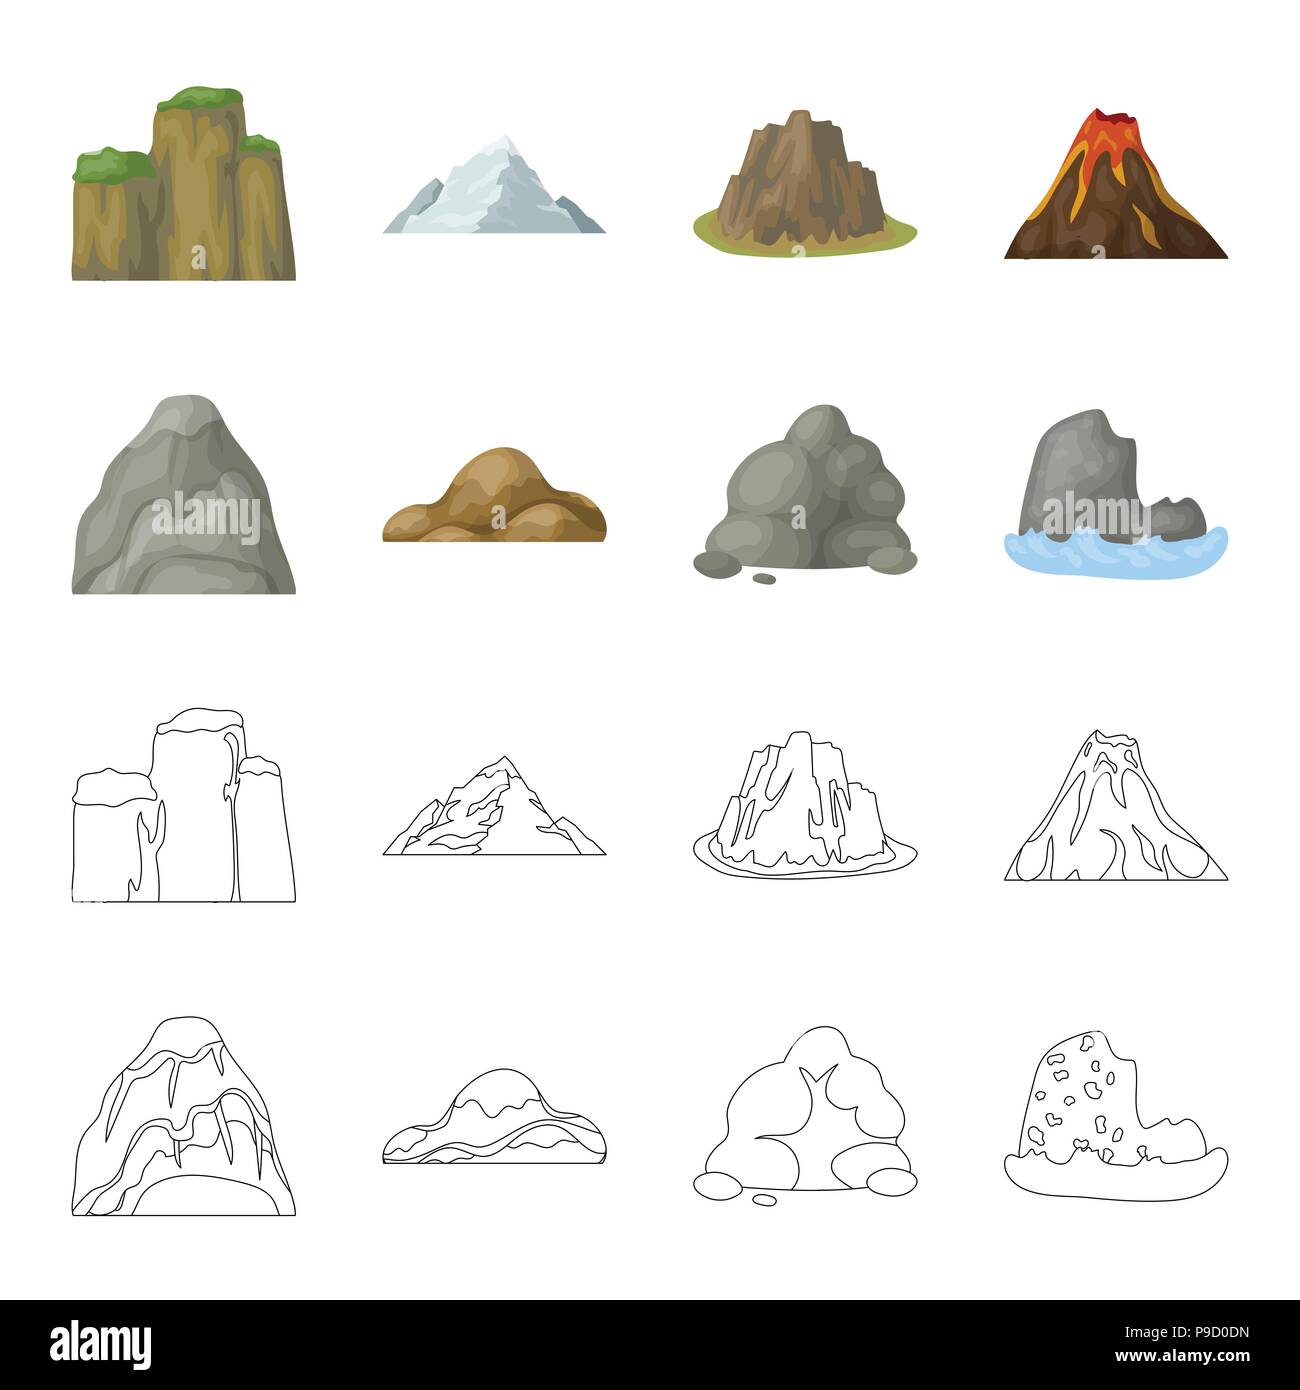 Geröll, eine abgerundete Berge, Felsen im Meer. Verschiedene berge Sammlung Icons im Cartoon, Outline style Vektor Symbol lieferbar Abbildung. Stock Vektor